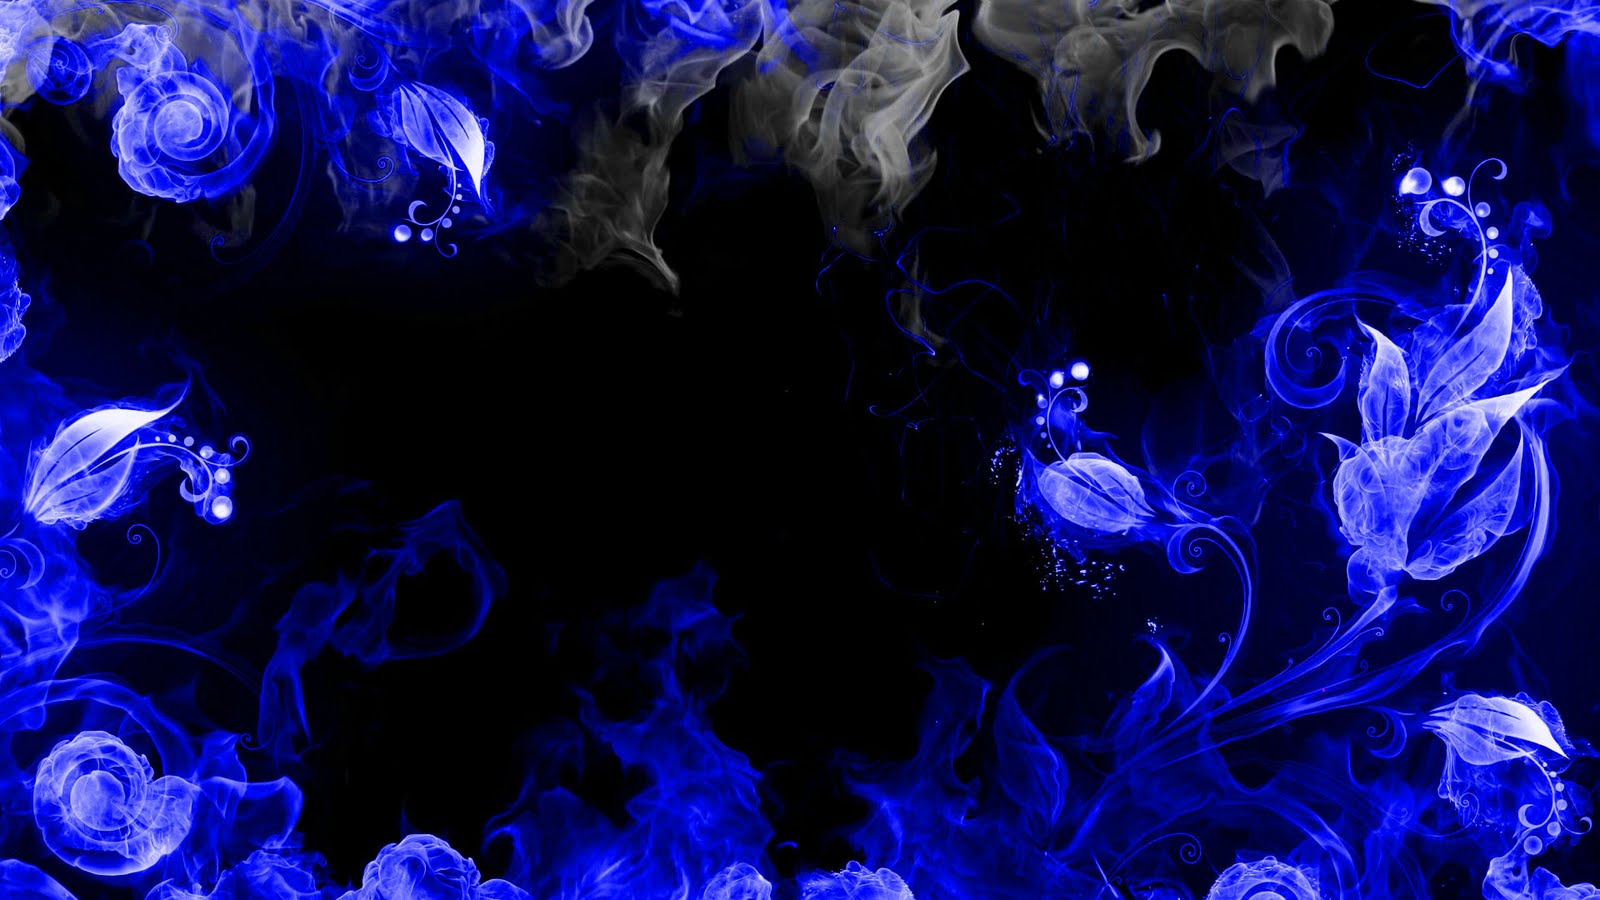 http://3.bp.blogspot.com/-35rdDipvUq4/TcskGSpqboI/AAAAAAAABe0/zc0VEUvEvgs/s1600/wallpaper-fire_HD-awsome_blue.jpg